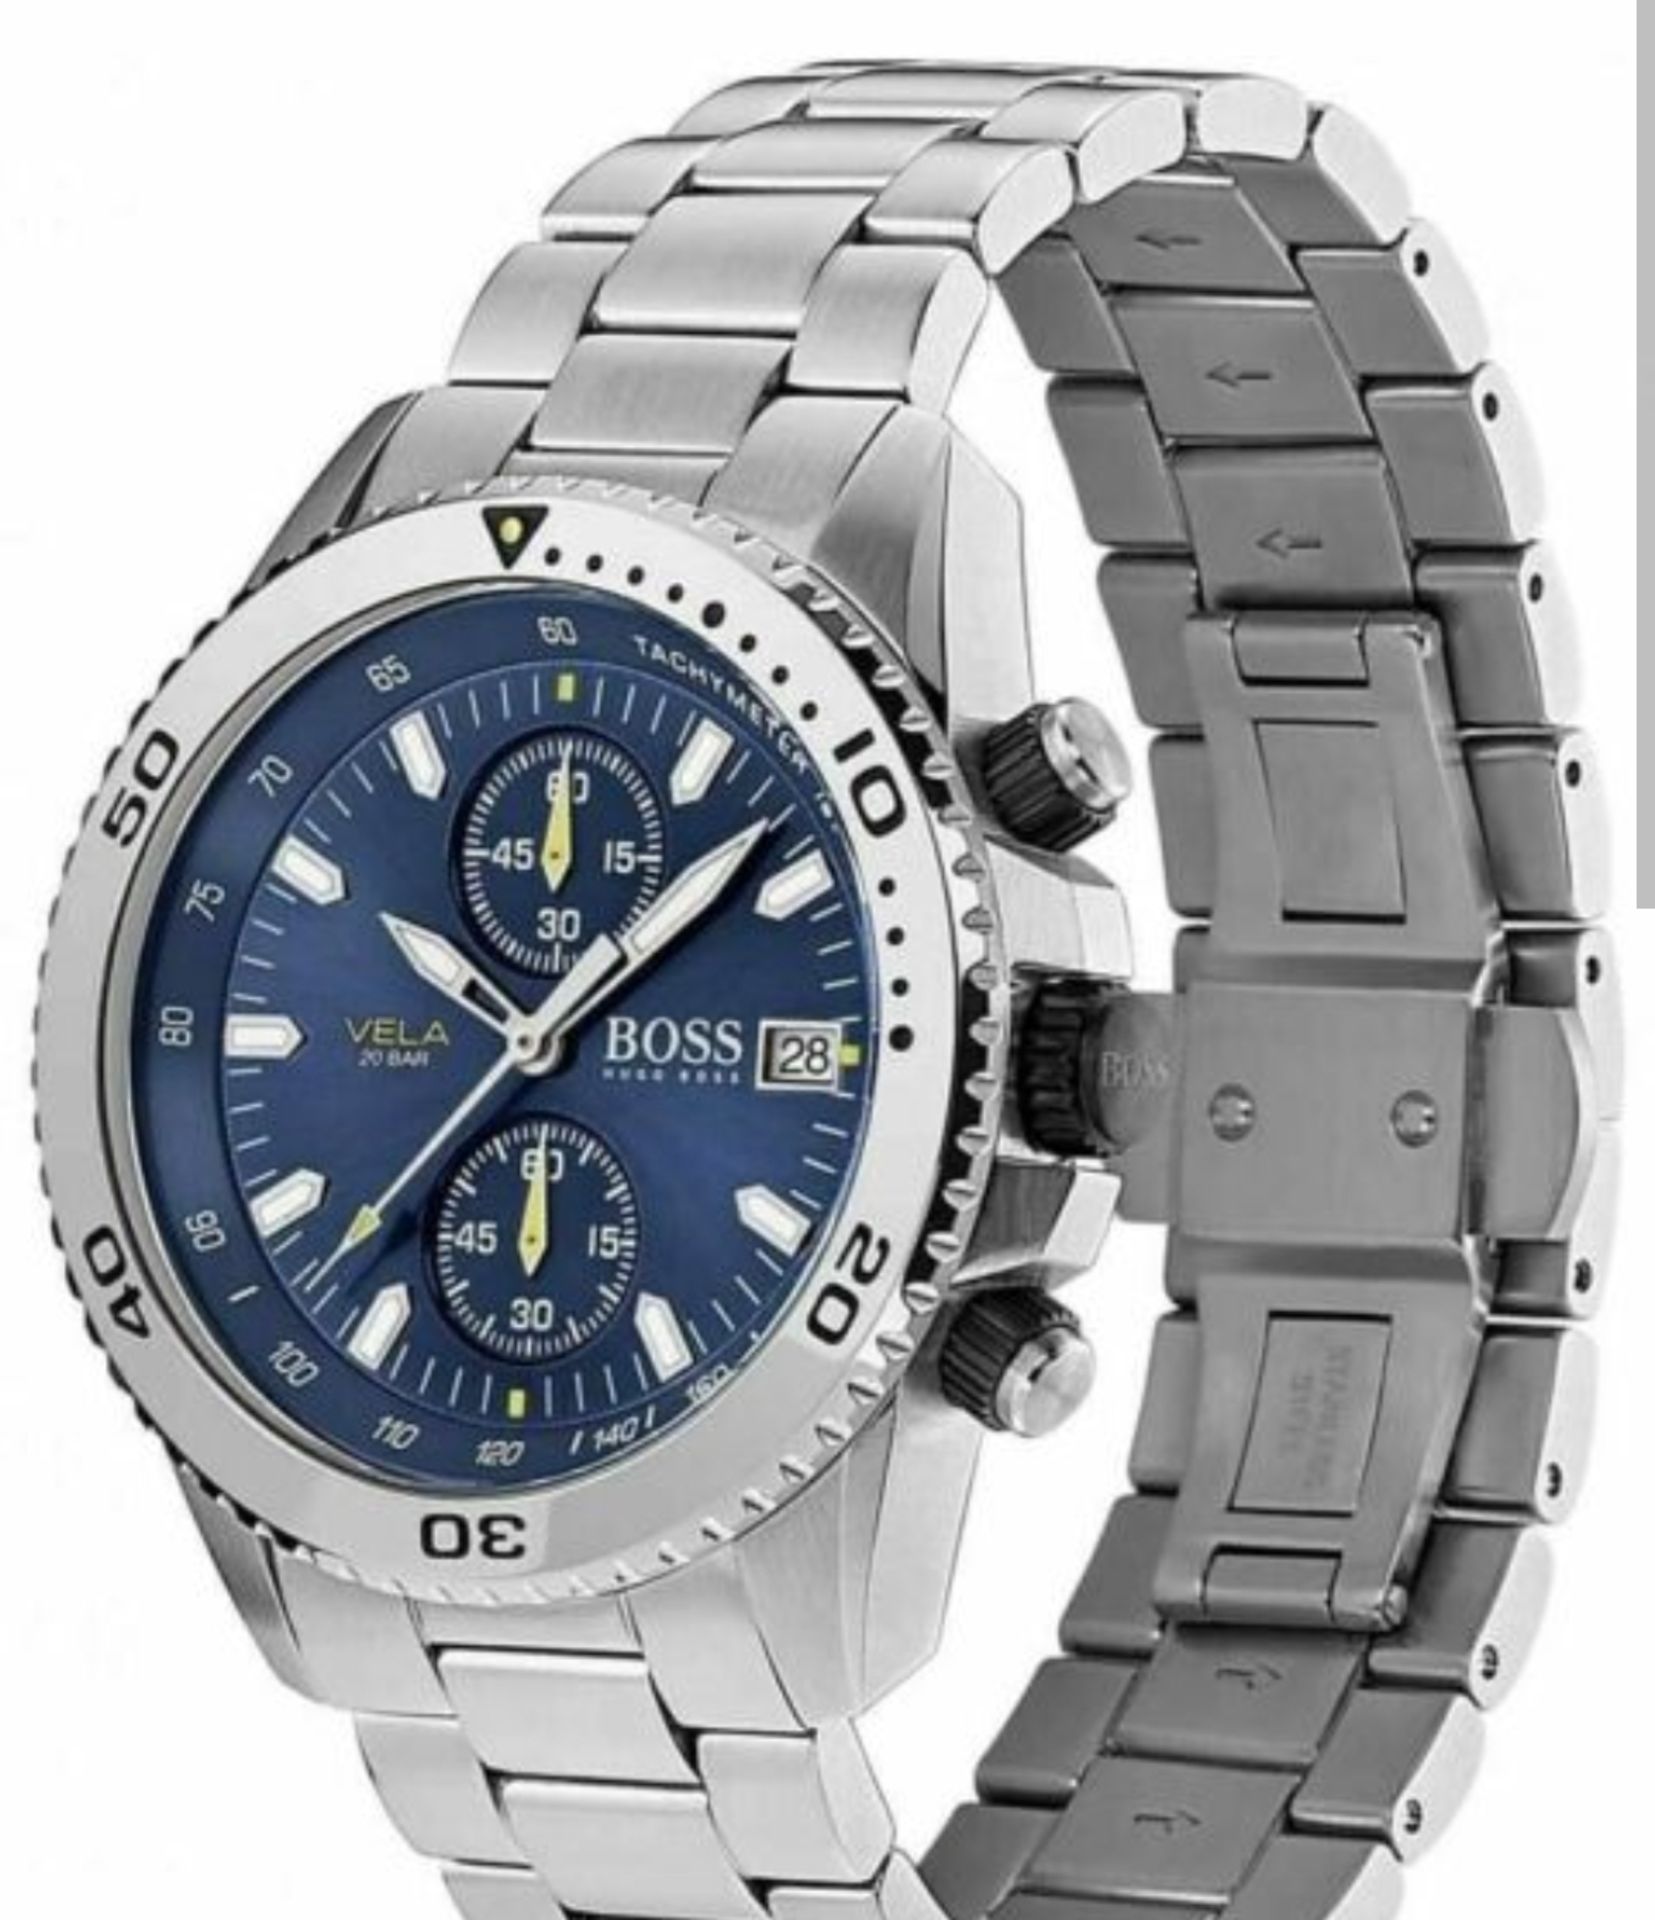 Hugo Boss 1513775 Men's Vela Silver Stainless Steel Bracelet Quartz Chronograph Watch - Image 2 of 10